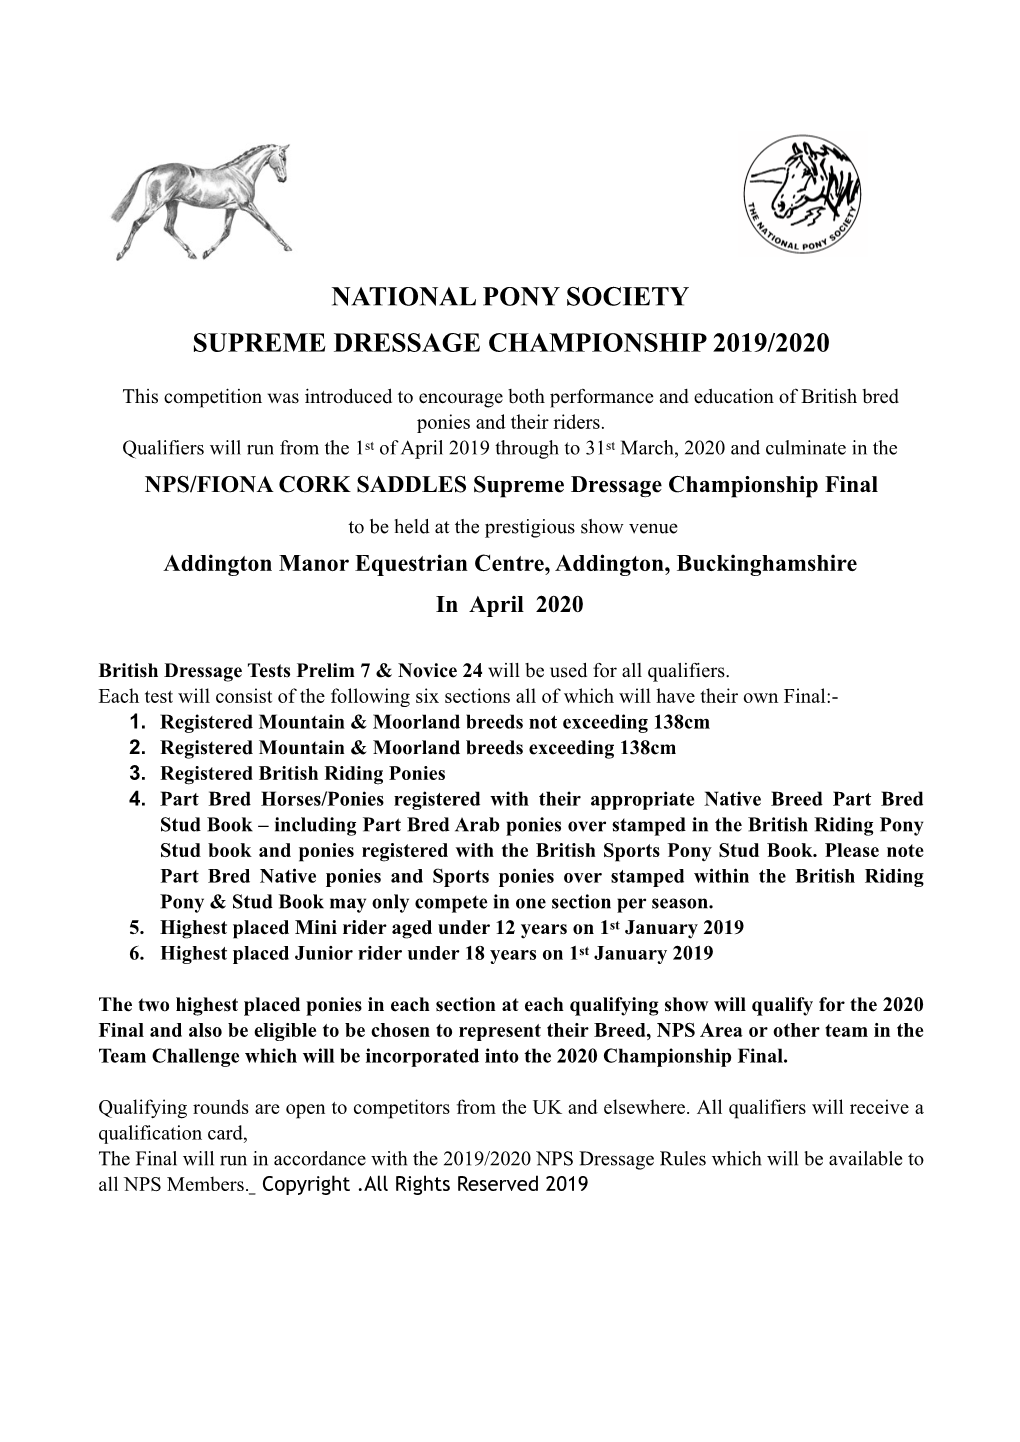 National Pony Society Supreme Dressage Championship 2019/2020